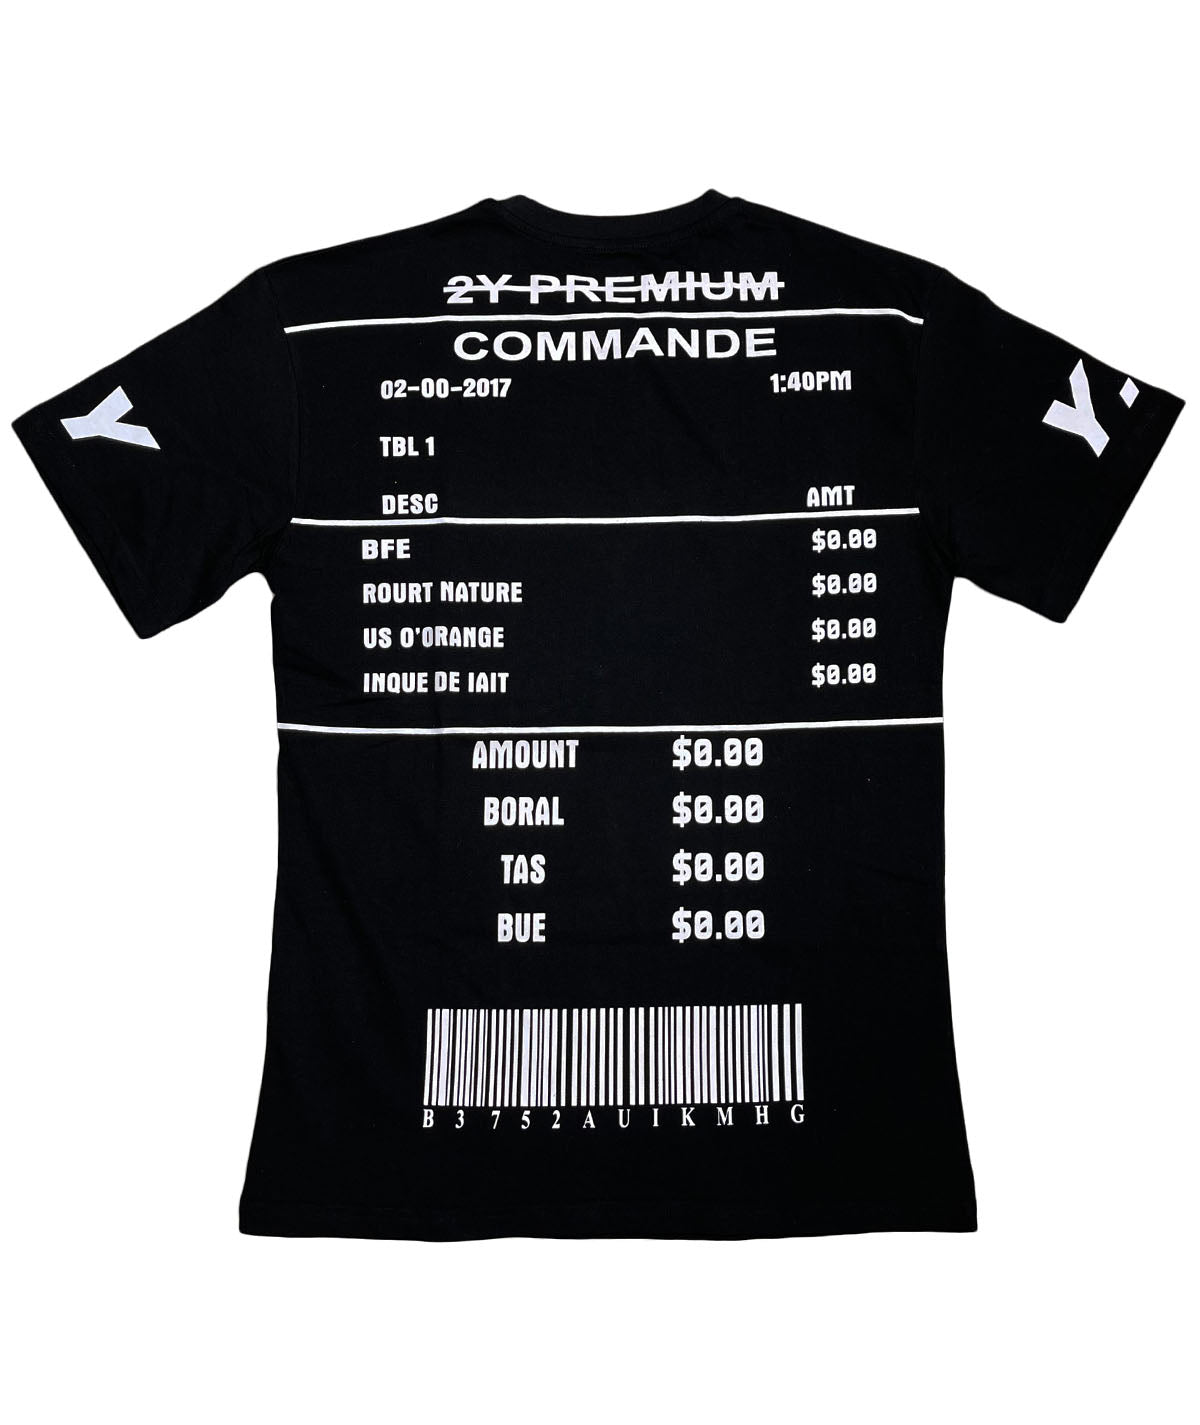 Ανδρικό t-shirt COMMANDE “2Y PREMIUM” (6611364970660)